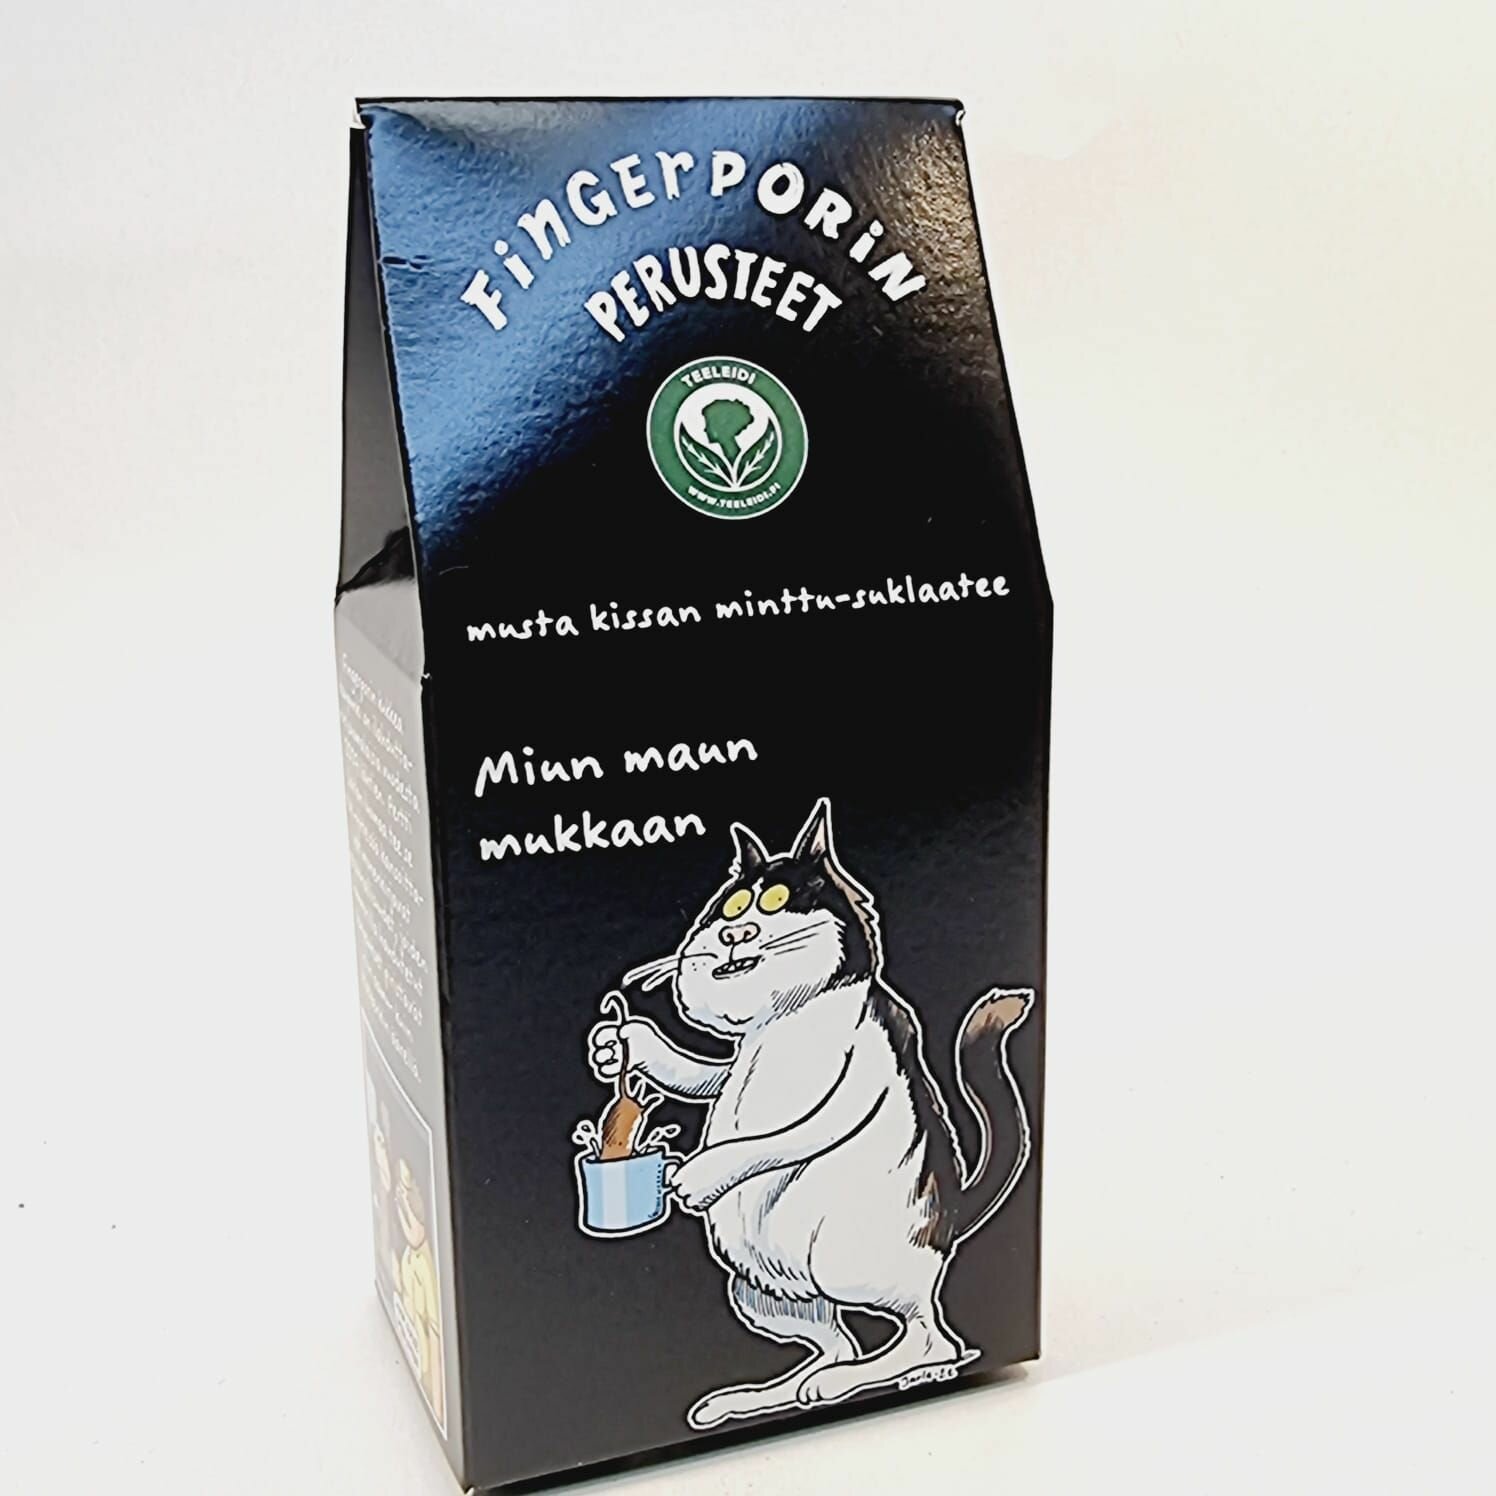 Чай черный Fingerpor Teeleidin "Черный кот" со вкусом мяты и шоколада 60 г (из Финляндии)